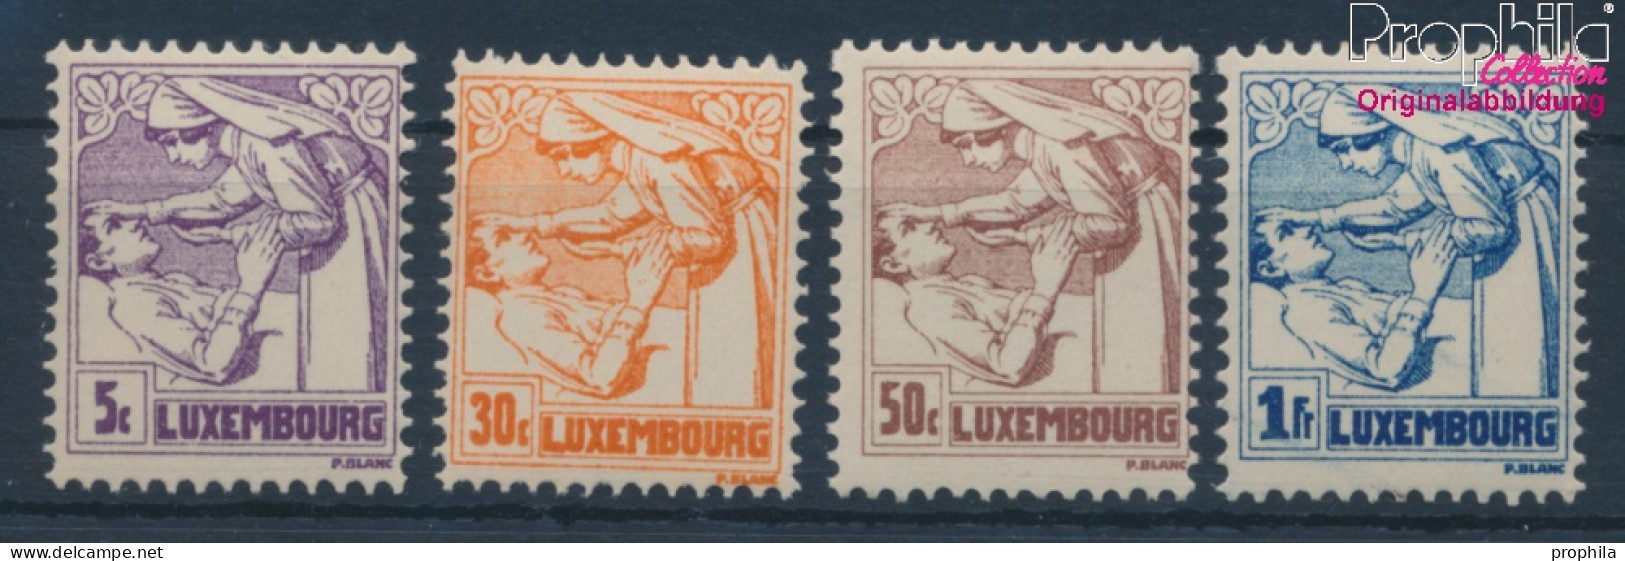 Luxemburg 157-160 (kompl.Ausg.) Postfrisch 1925 Tuberkulose (10362785 - Neufs